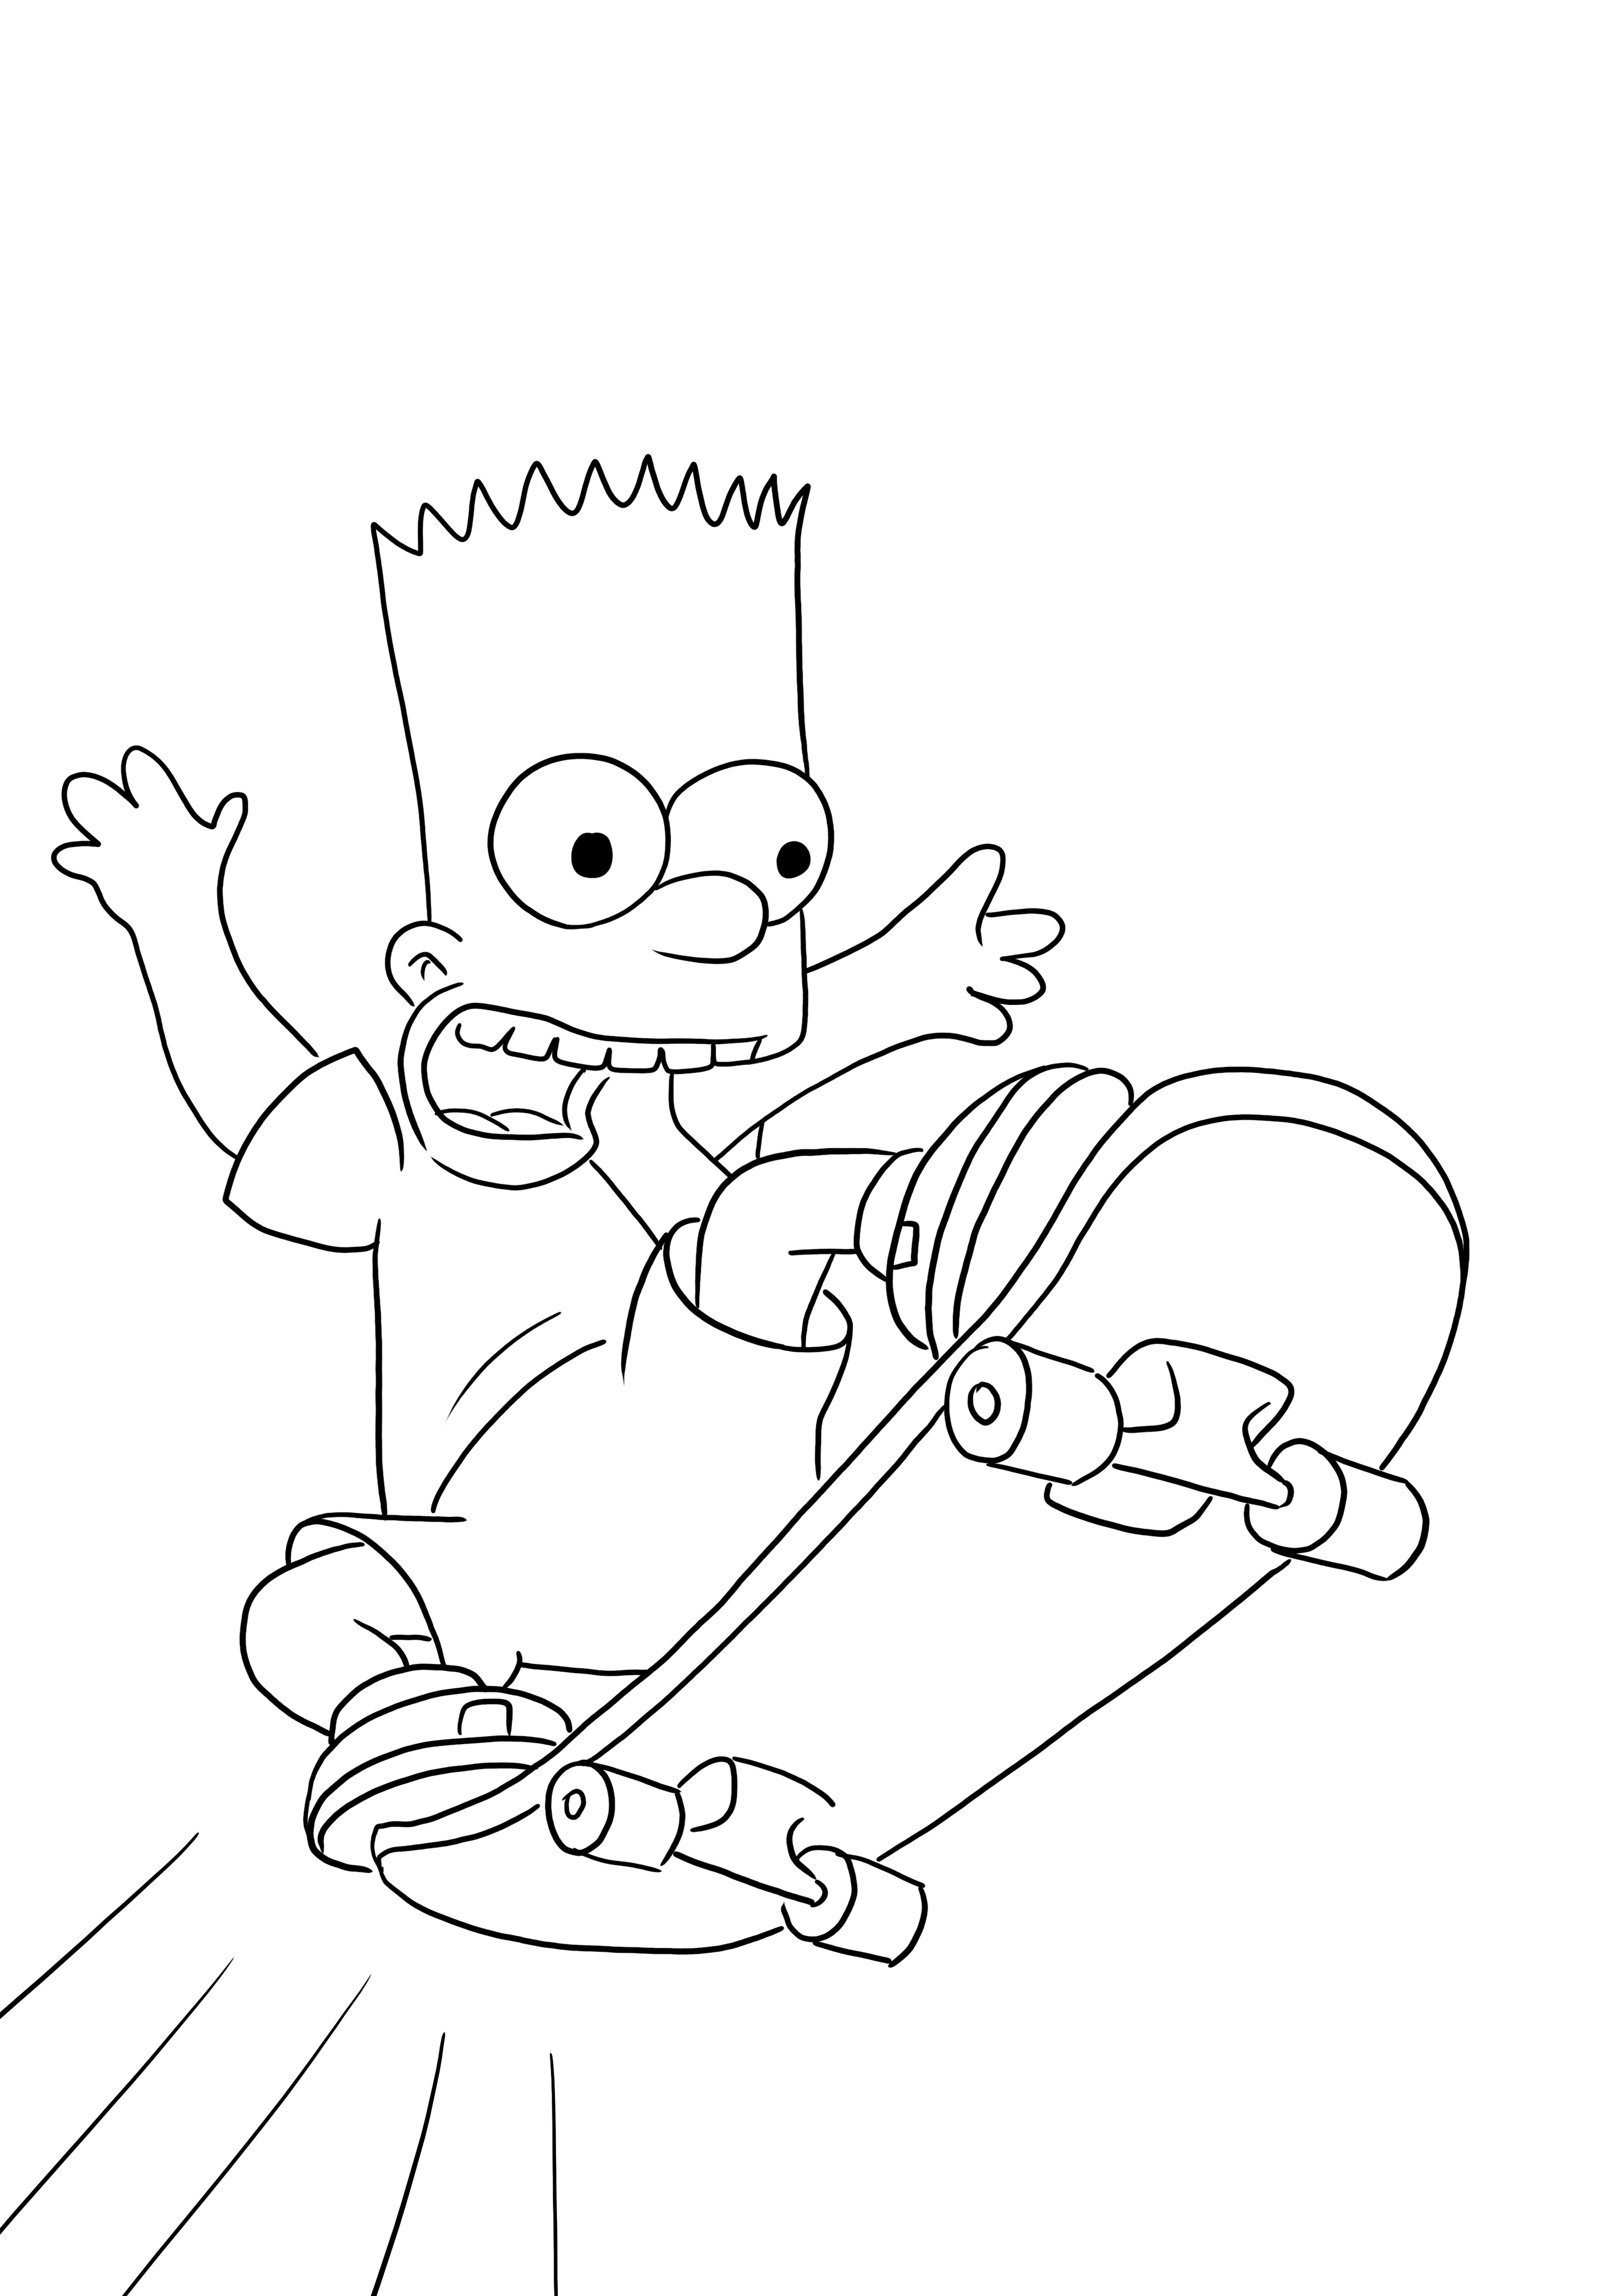 Bart Simpsons jeżdżący na łyżwach za darmo do wydrukowania i pokolorowania dla dzieci